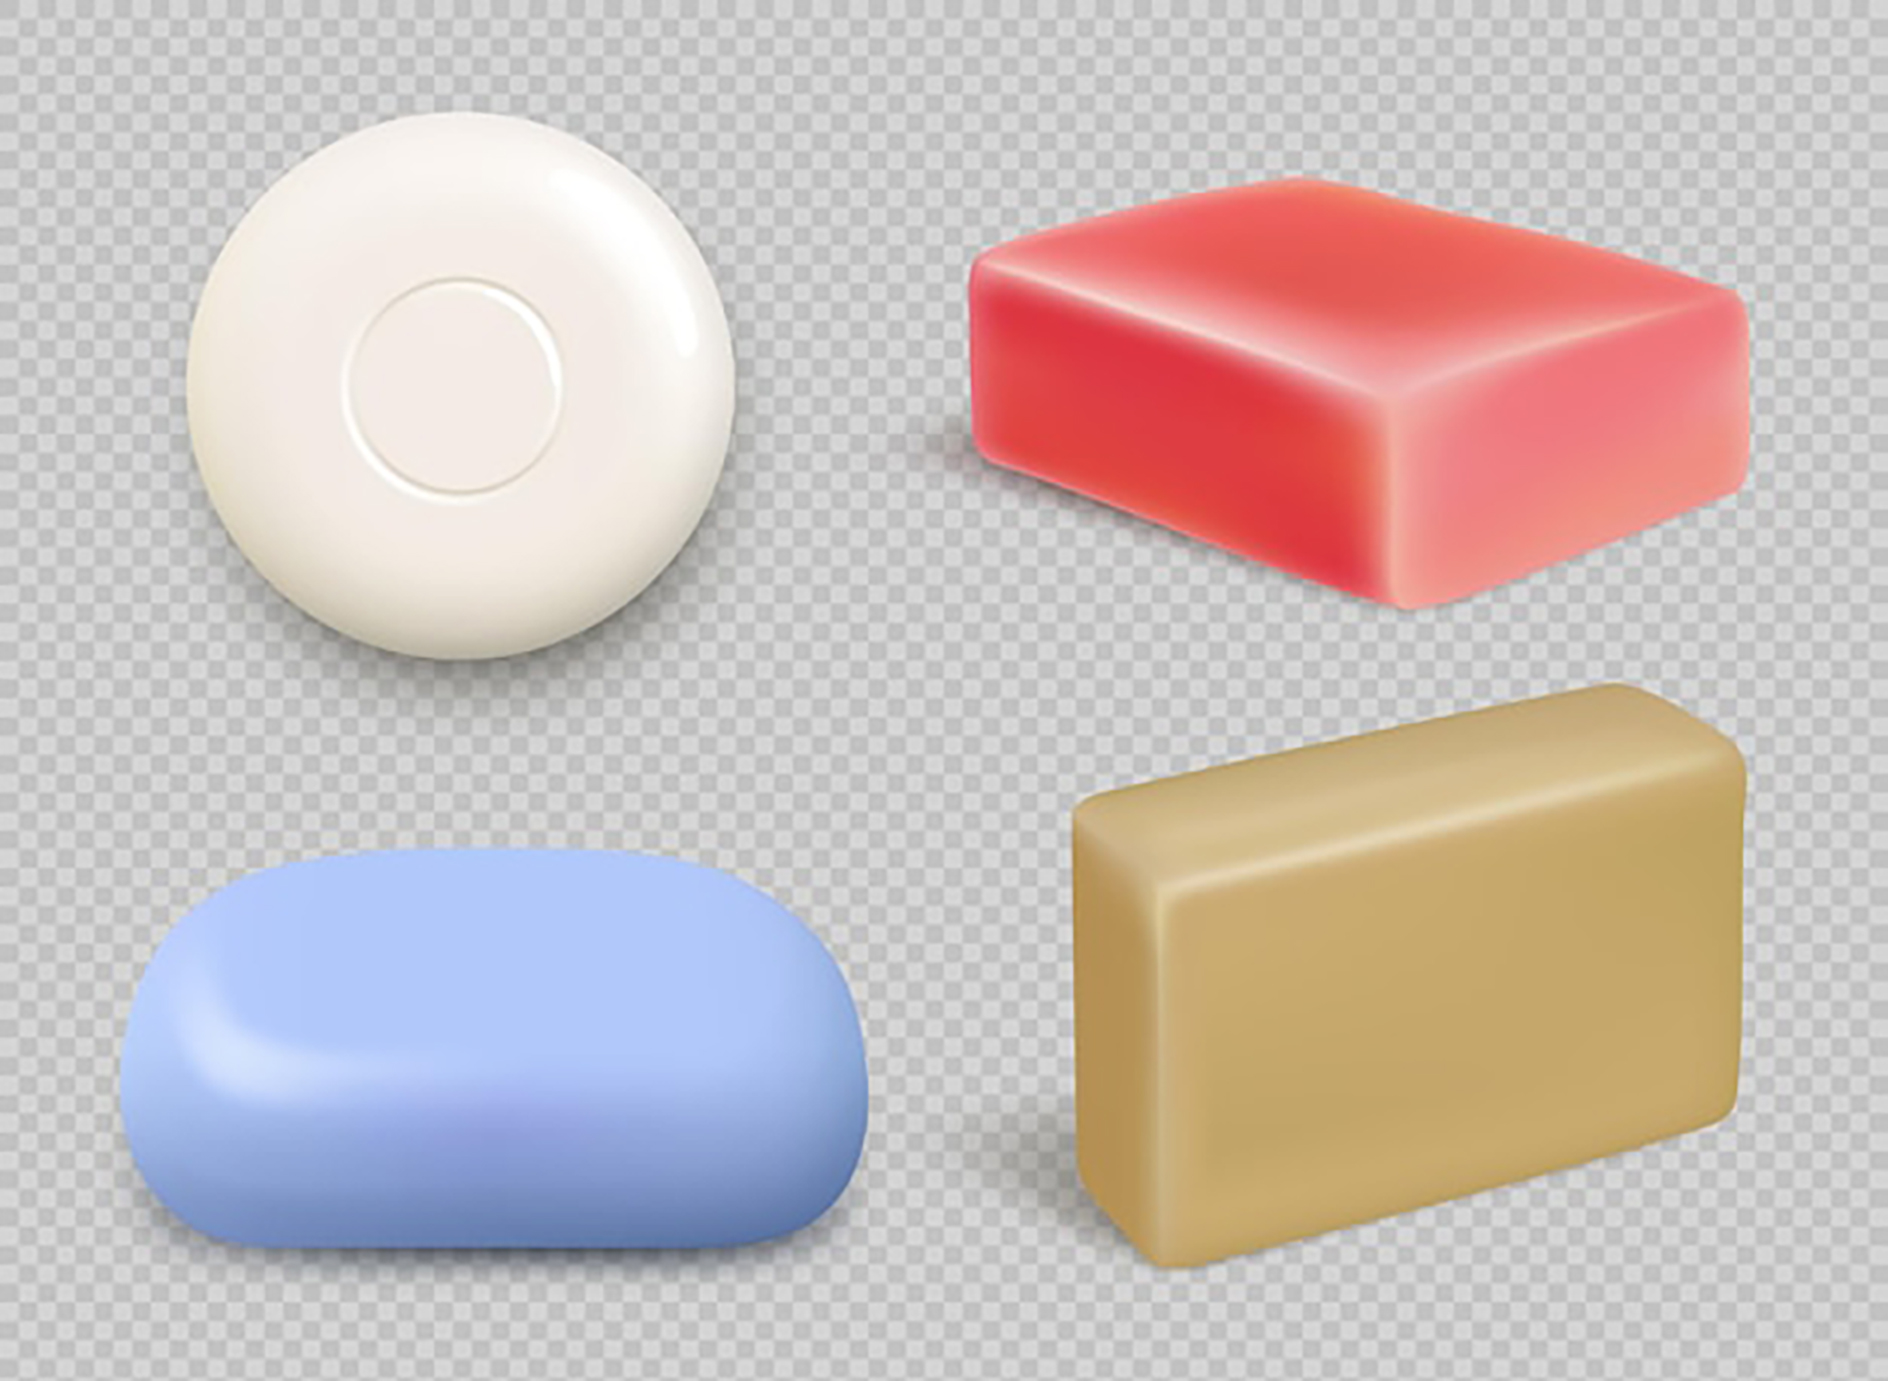 سه بعدی صابون های مختلف